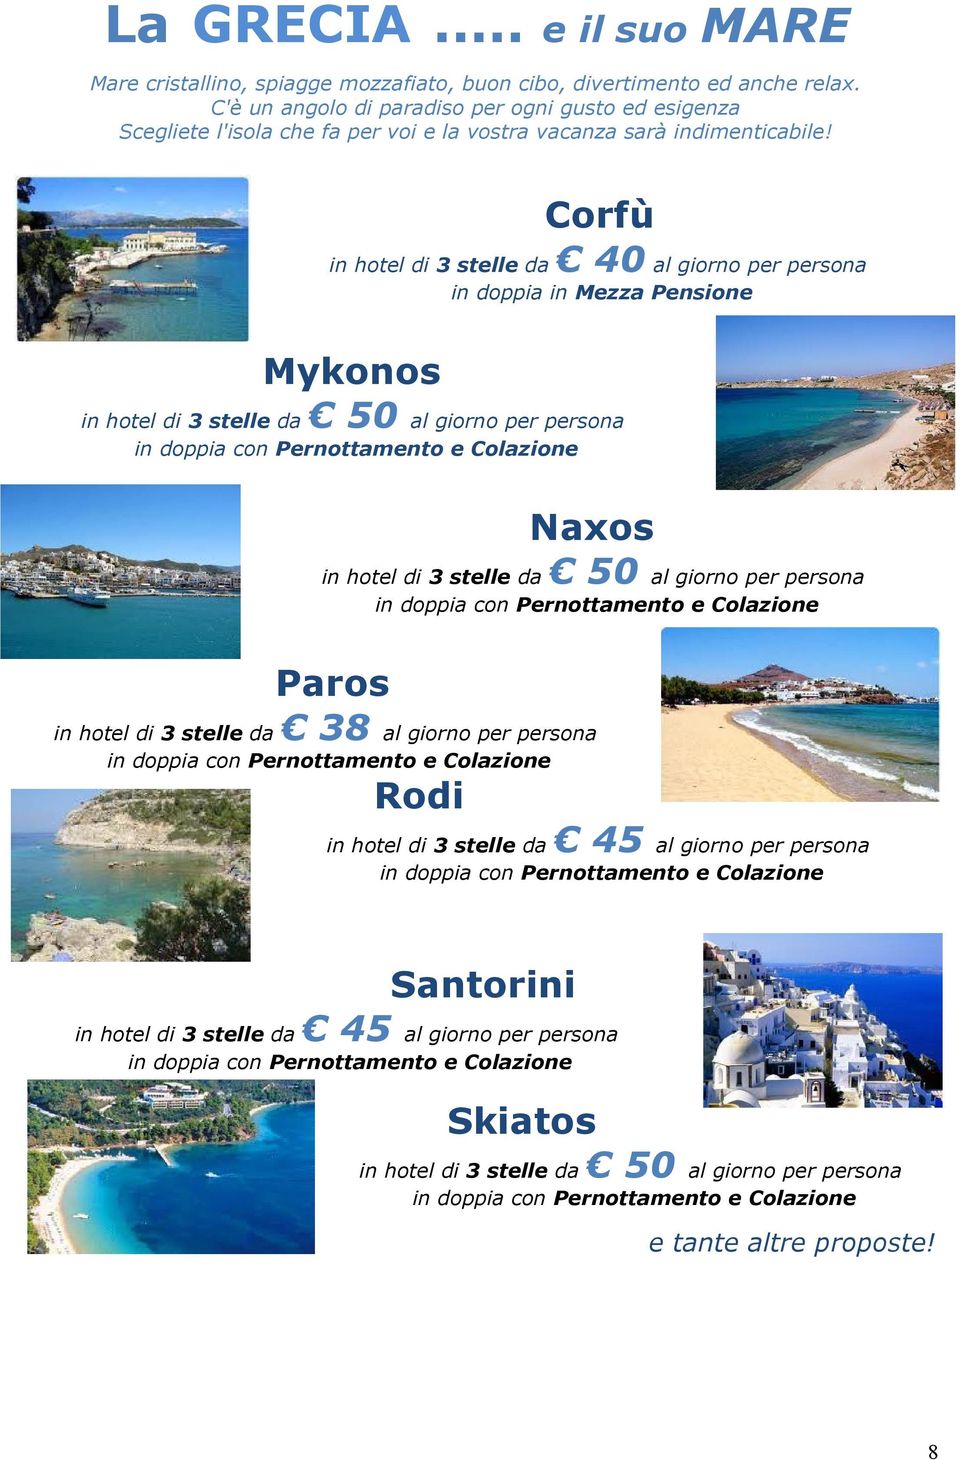 Corfù in hotel di 3 stelle da 40 al giorno per persona in doppia in Mezza Pensione Mykonos in hotel di 3 stelle da 50 al giorno per persona Naxos in hotel di 3 stelle da